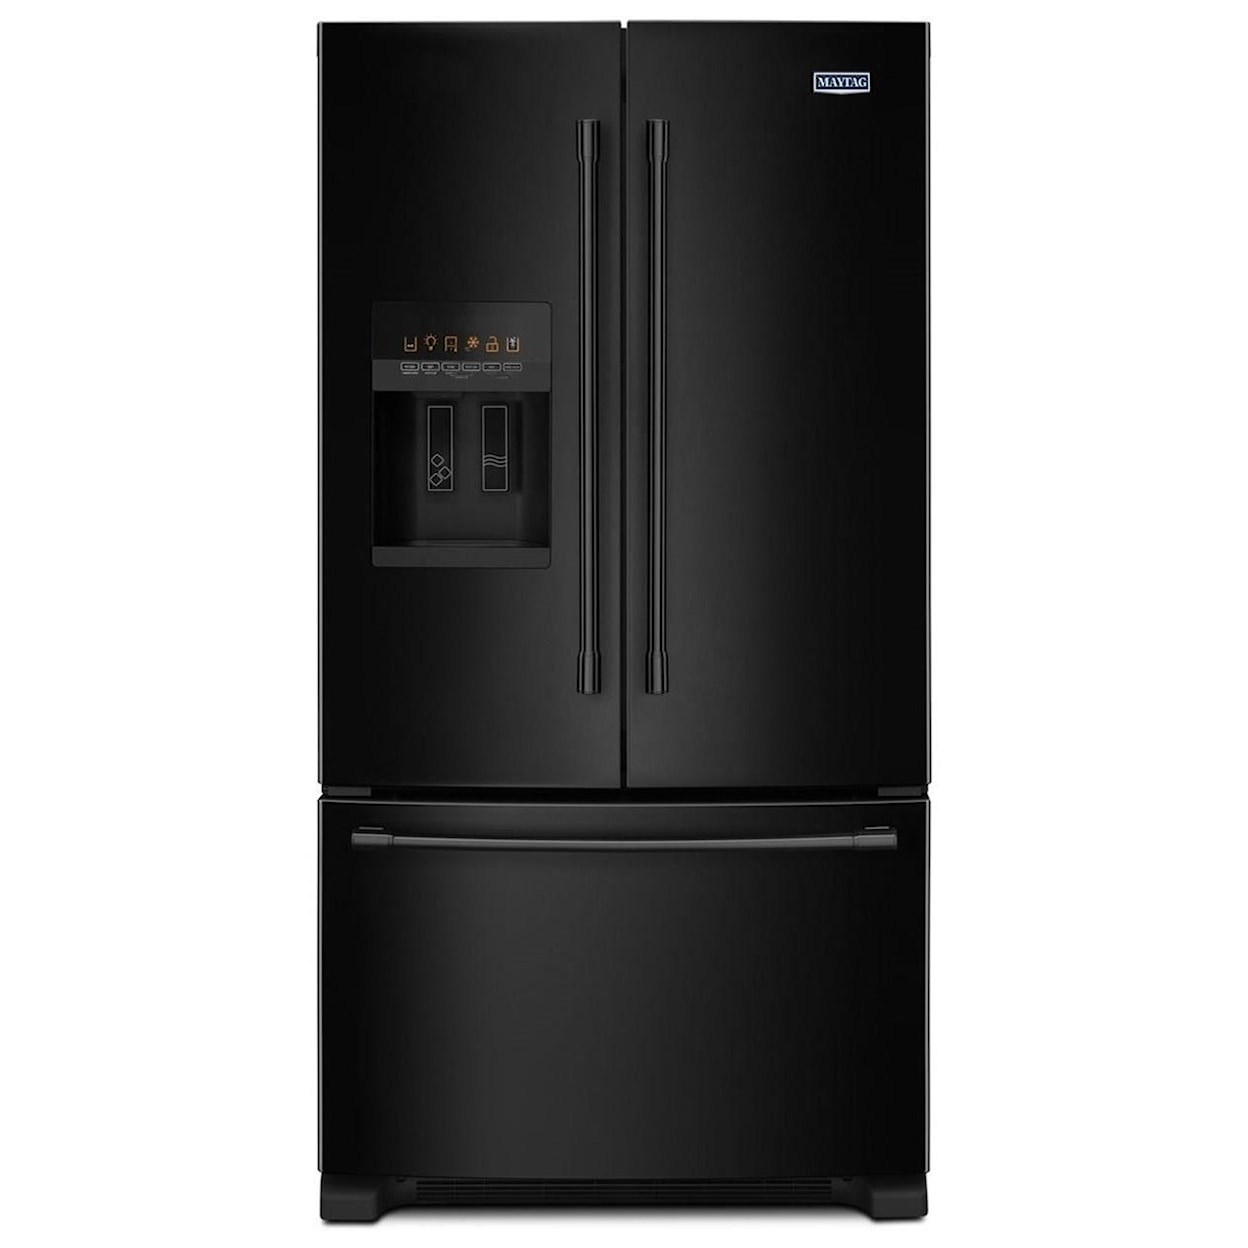 Maytag Maytag French Door Refrigerators 36-Inch Wide French Door Refrigerator